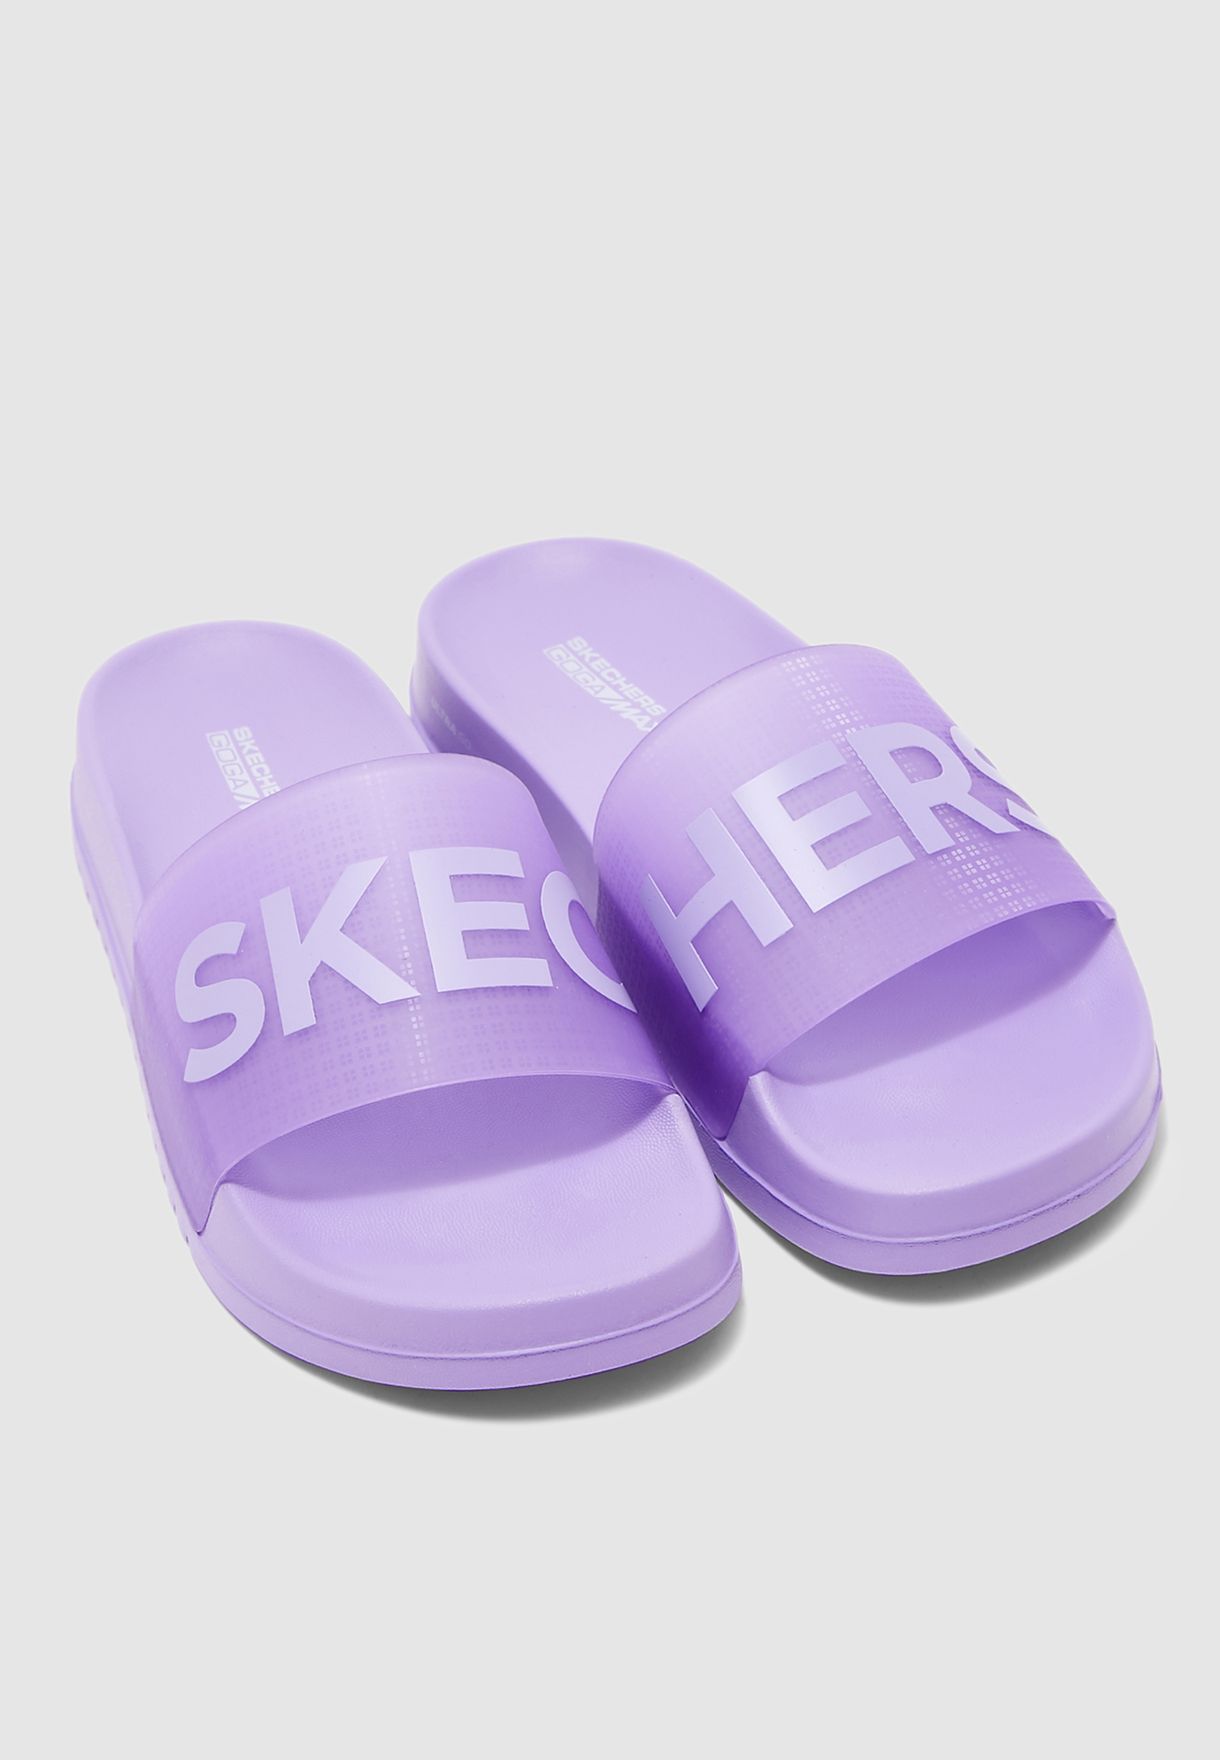 Skechers Women S Shoe Size Chart